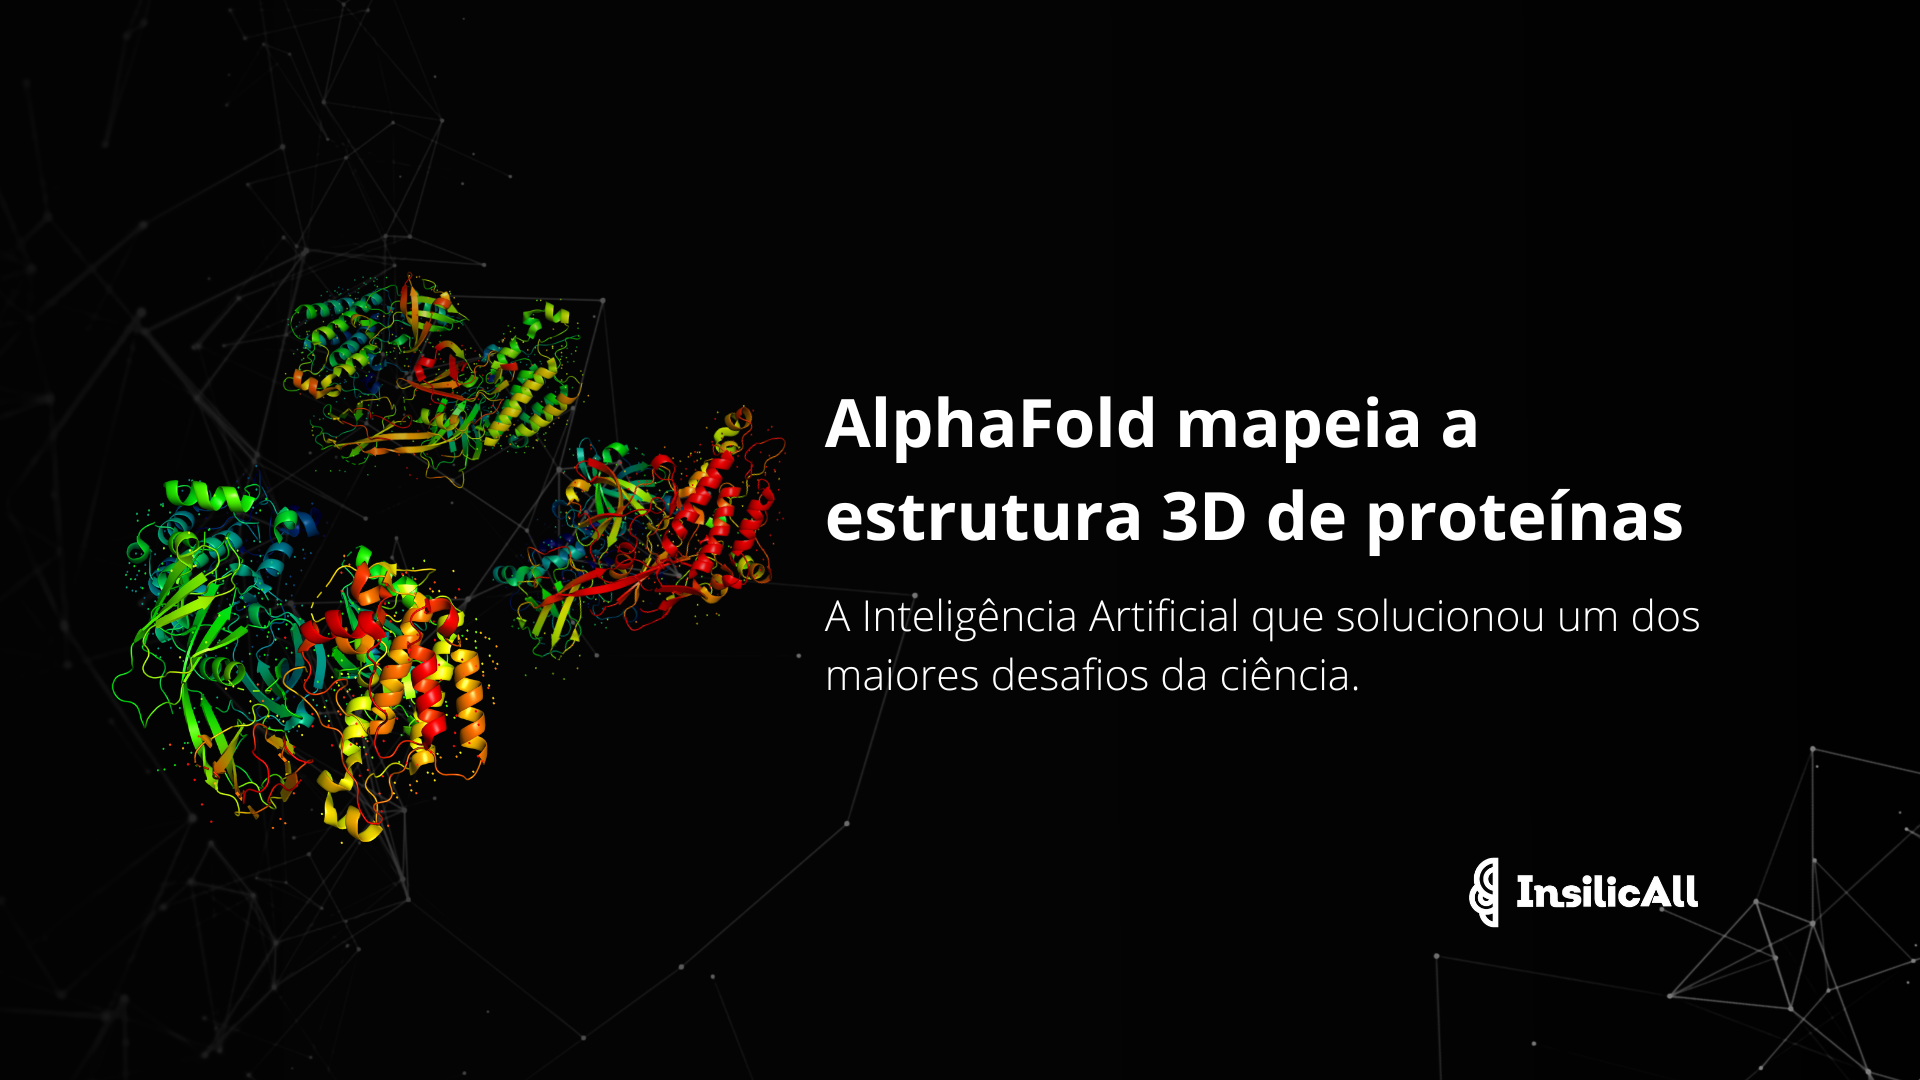 AlphaFold mapeia a estrutura 3D de proteínas